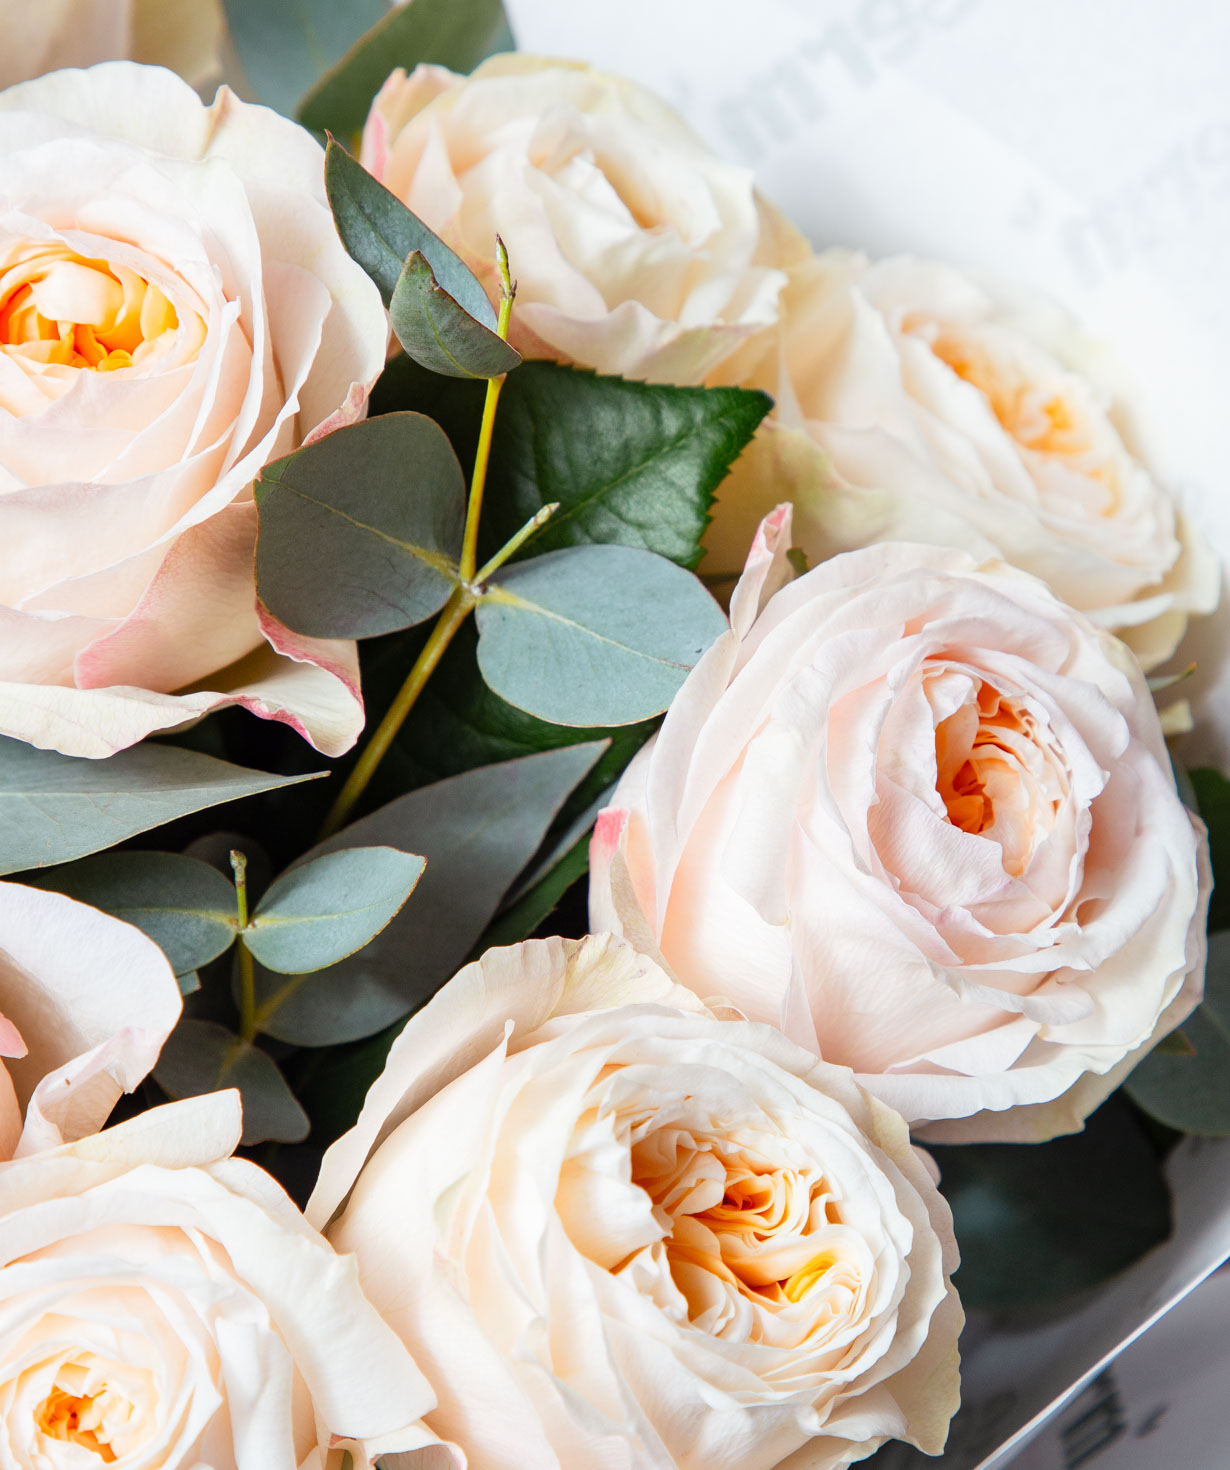 Ծաղկեփունջ «Տրեսկո» հոլանդական վարդերով